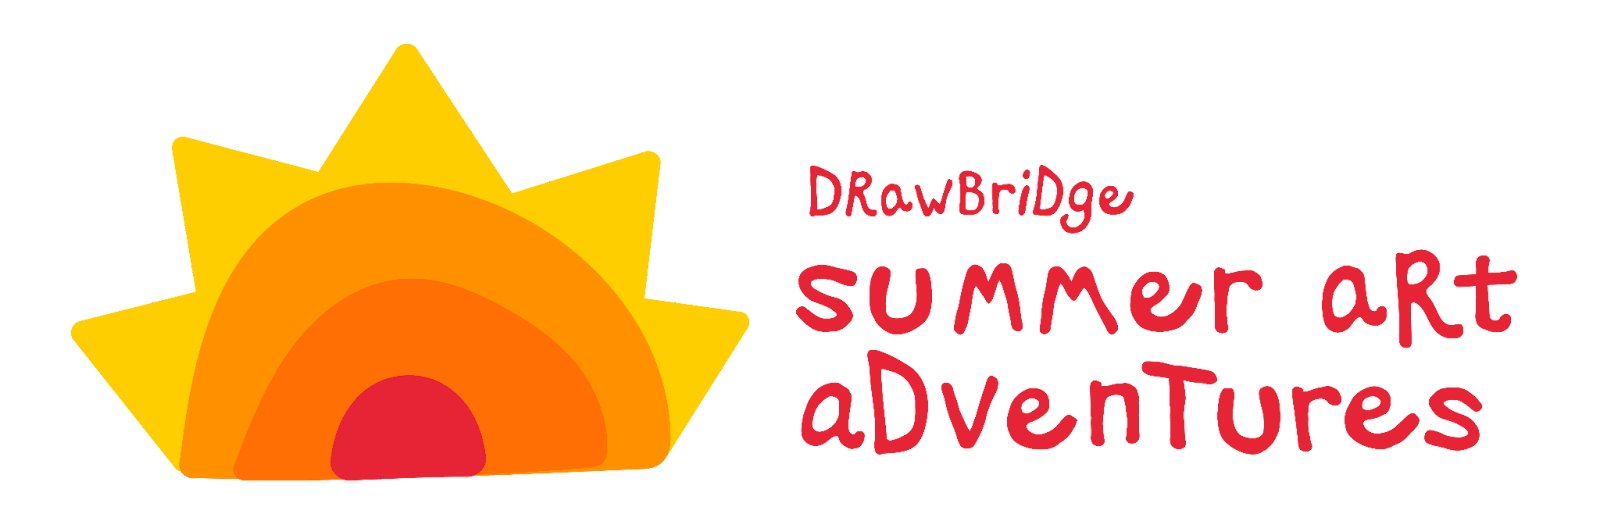 DrawBridge Announces Summer Program for Children